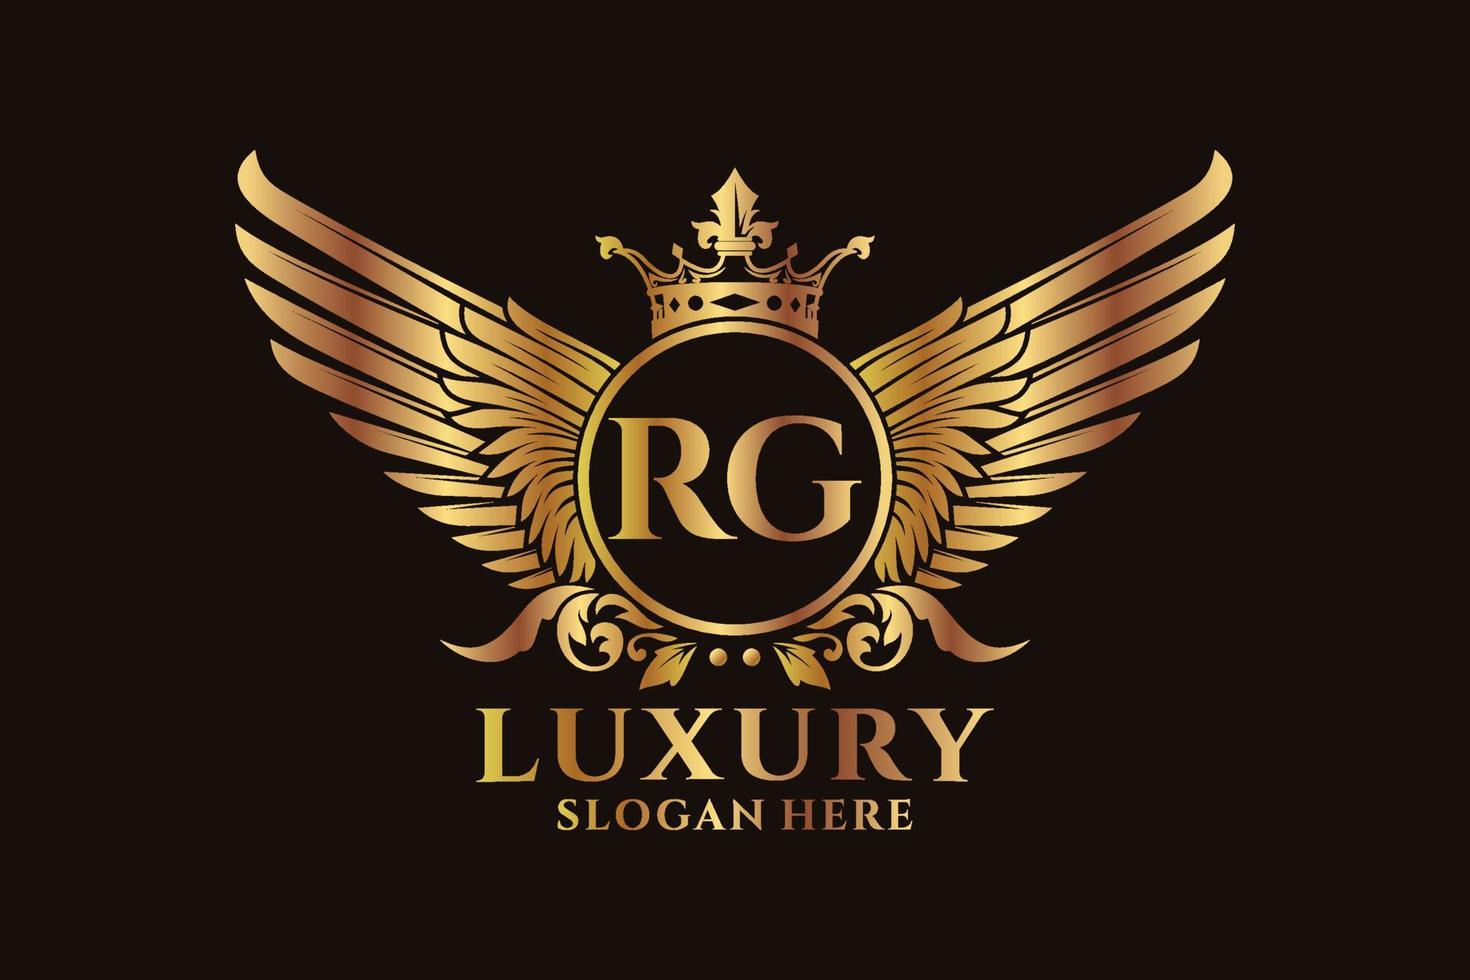 lusso reale ala lettera rg cresta oro colore logo vettore, vittoria logo, cresta logo, ala logo, vettore logo modello.